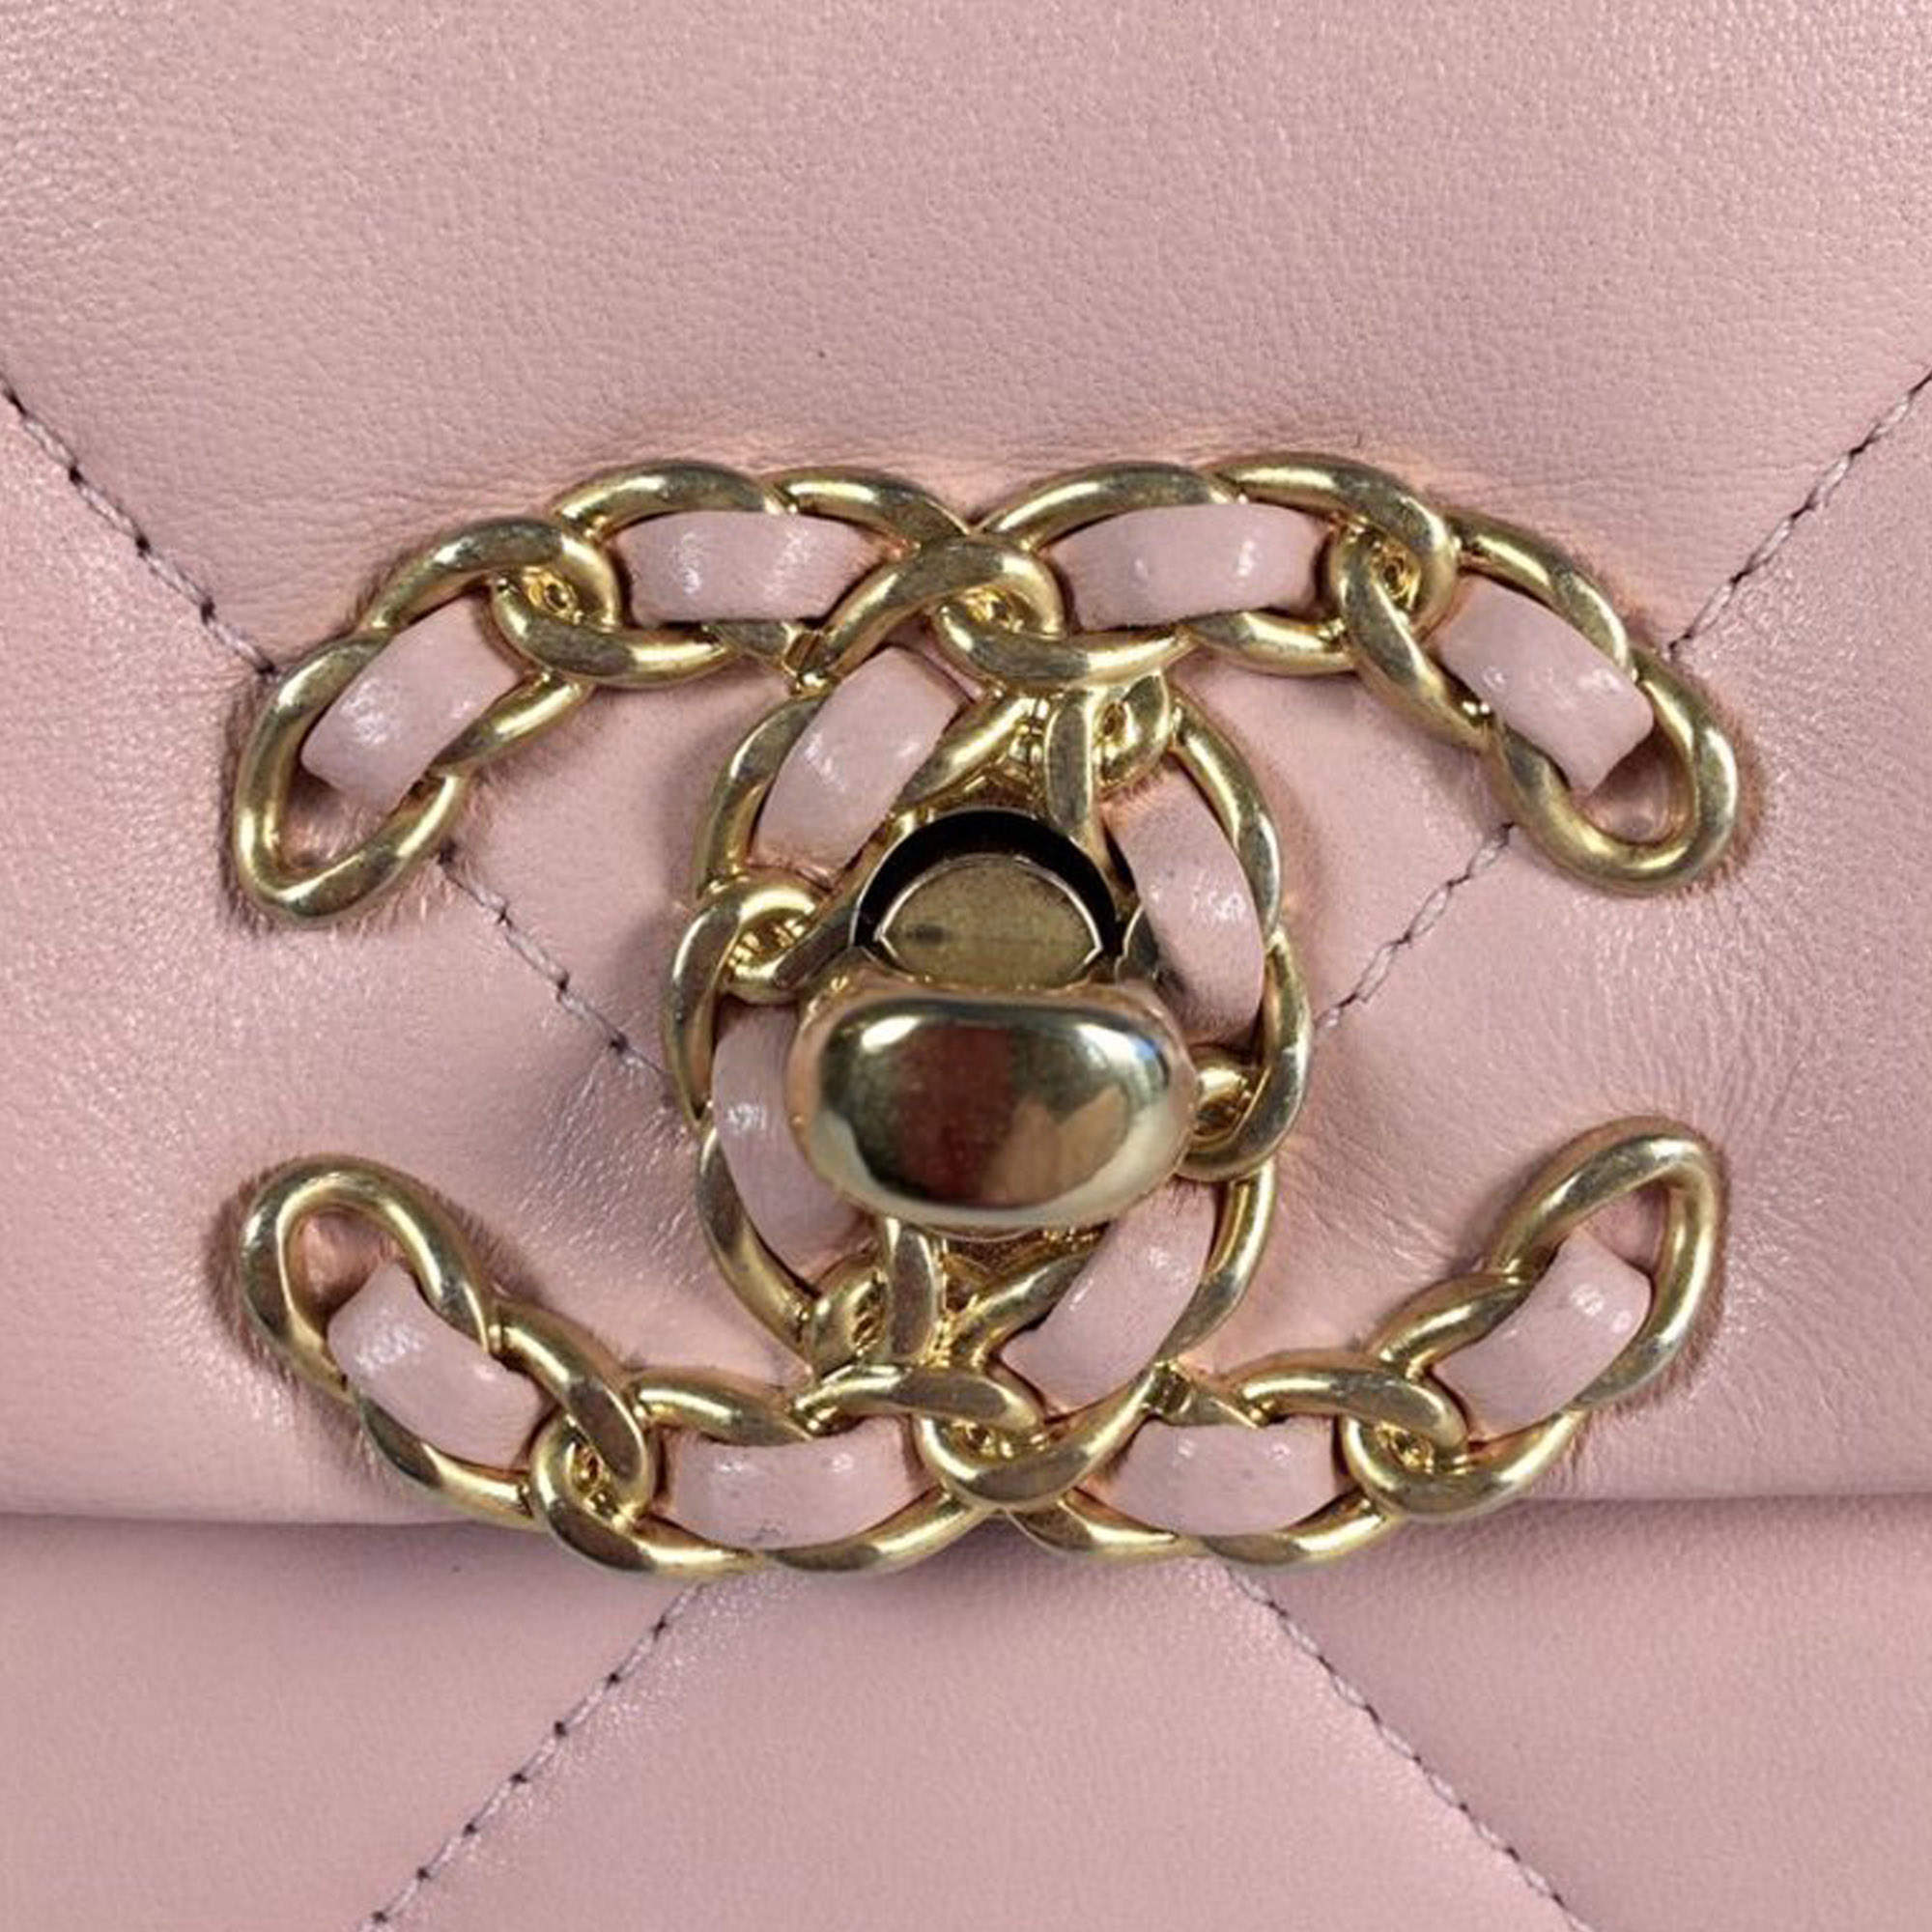 CHANEL 19 Shoulder Handbag Pink Quilted Lambskin Leather